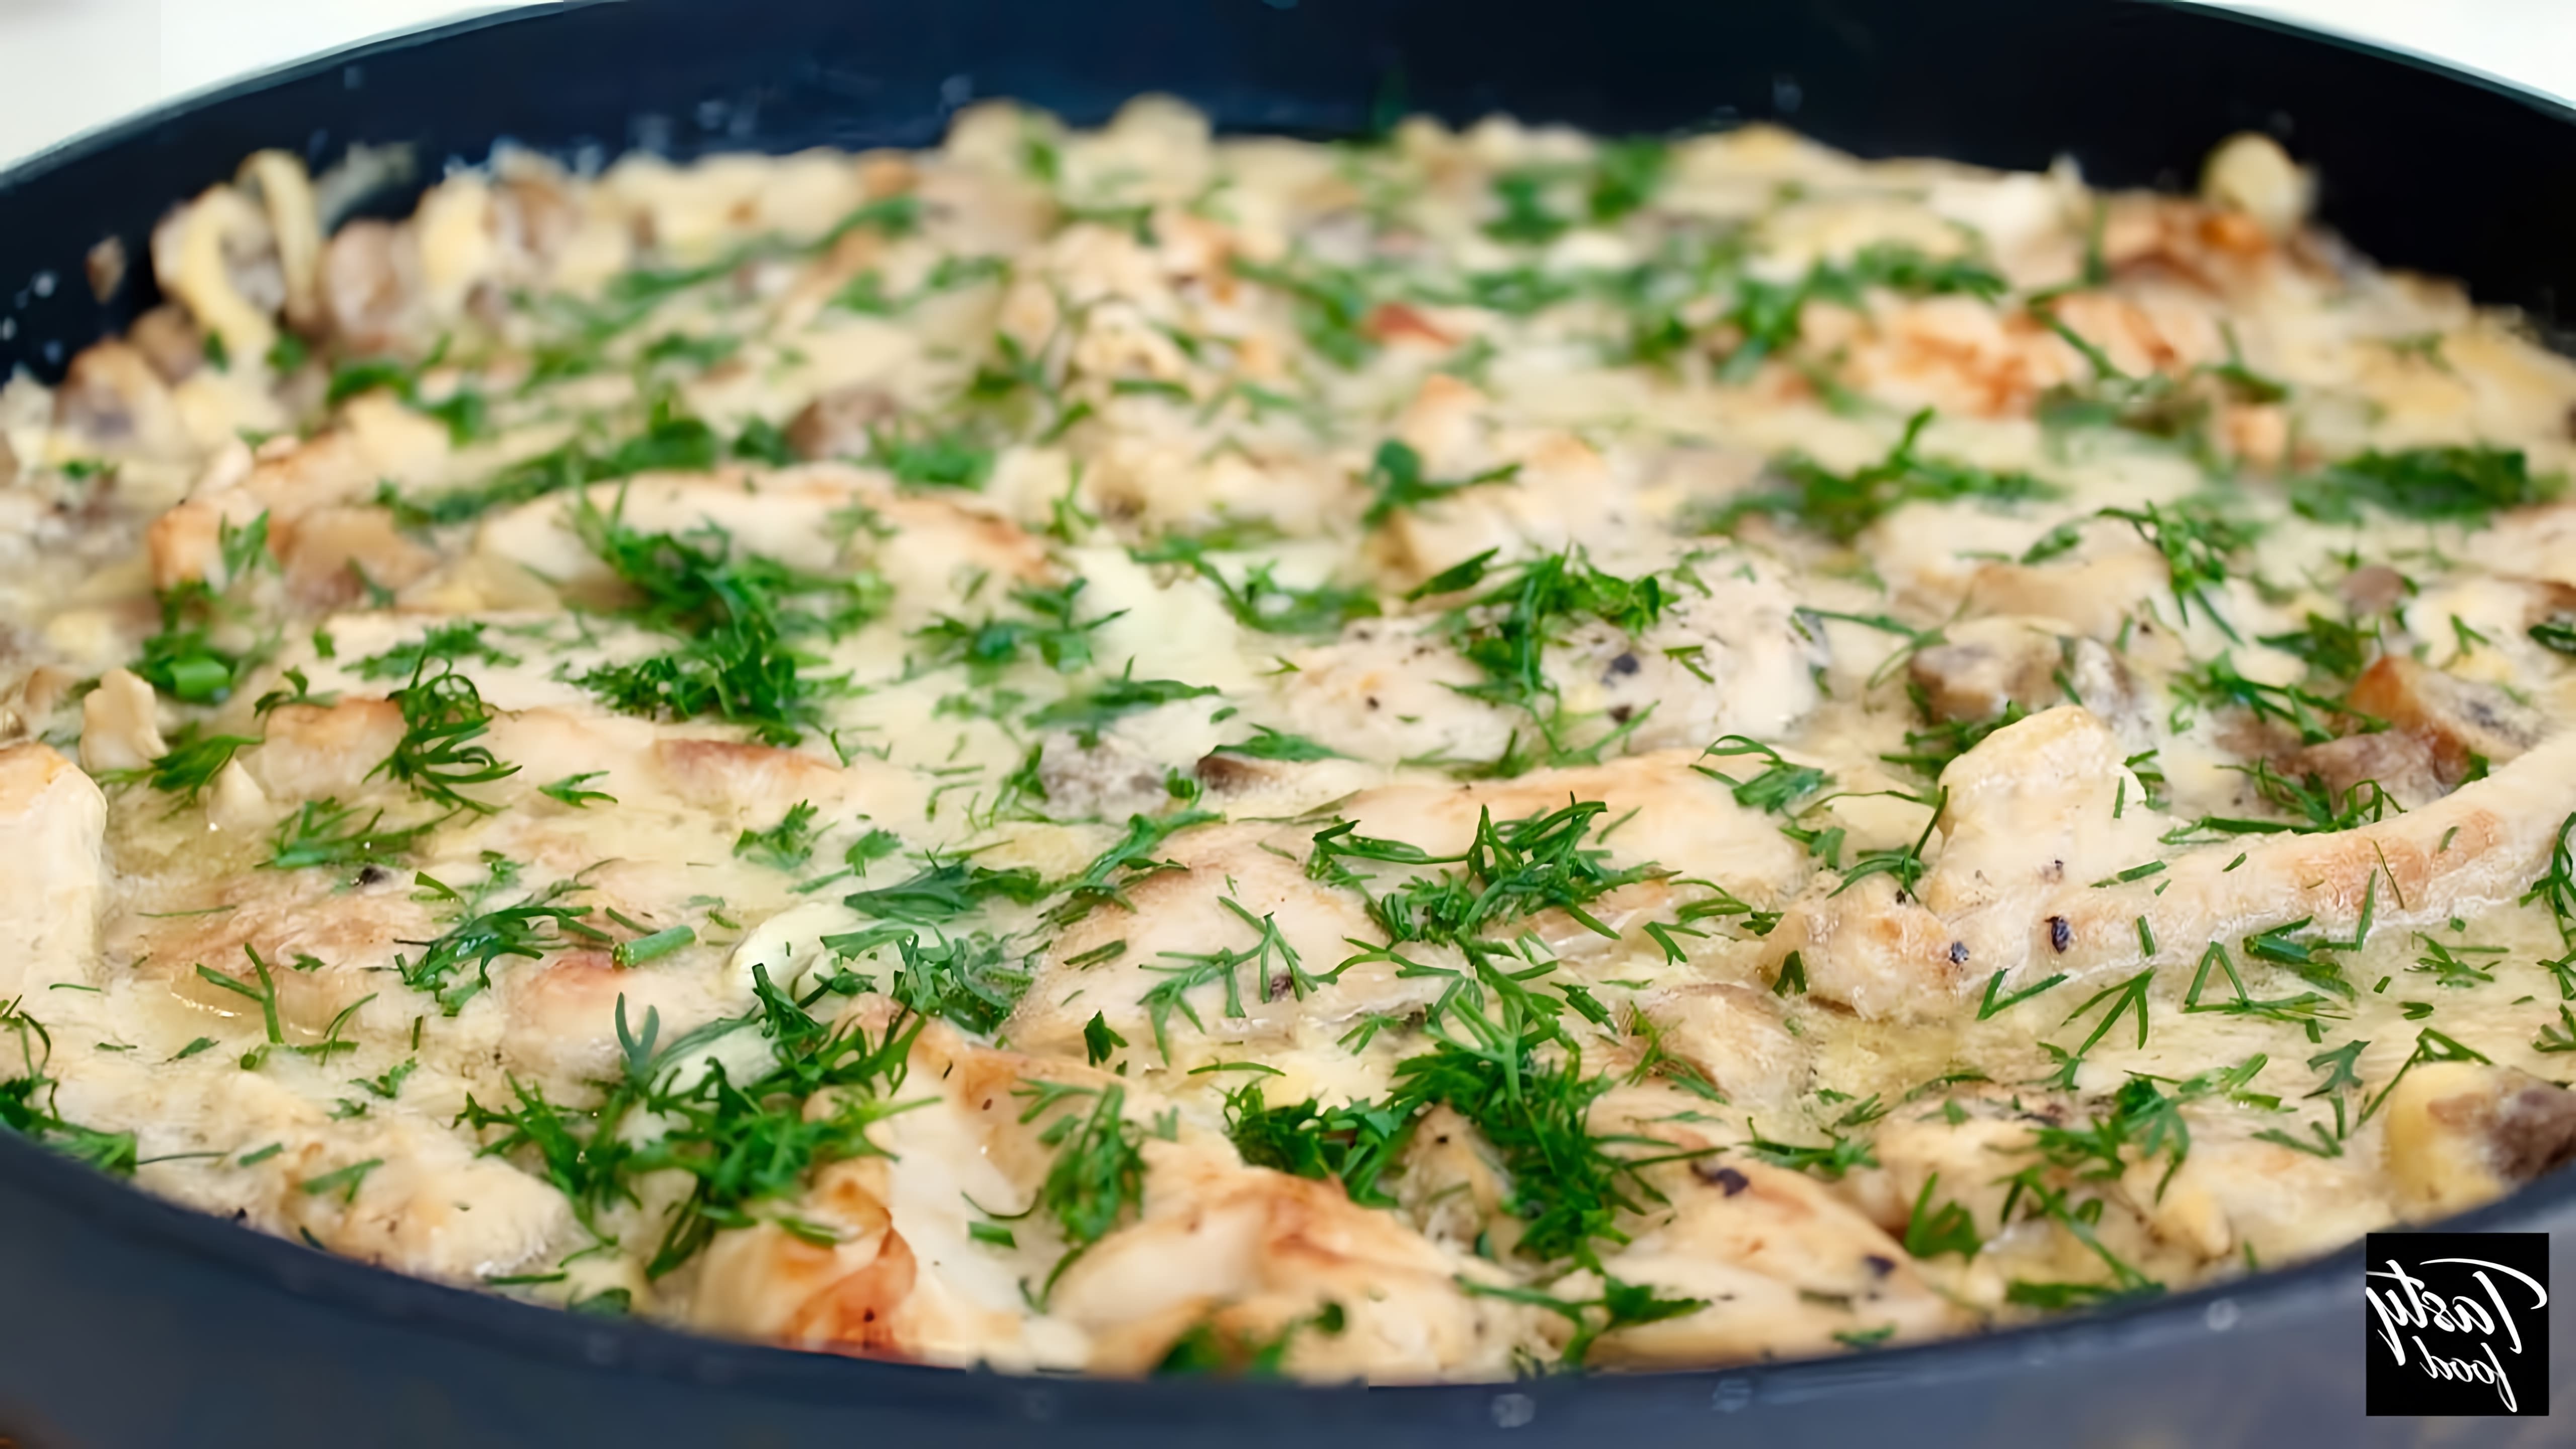 В этом видео демонстрируется рецепт приготовления куриного филе в грибном соусе